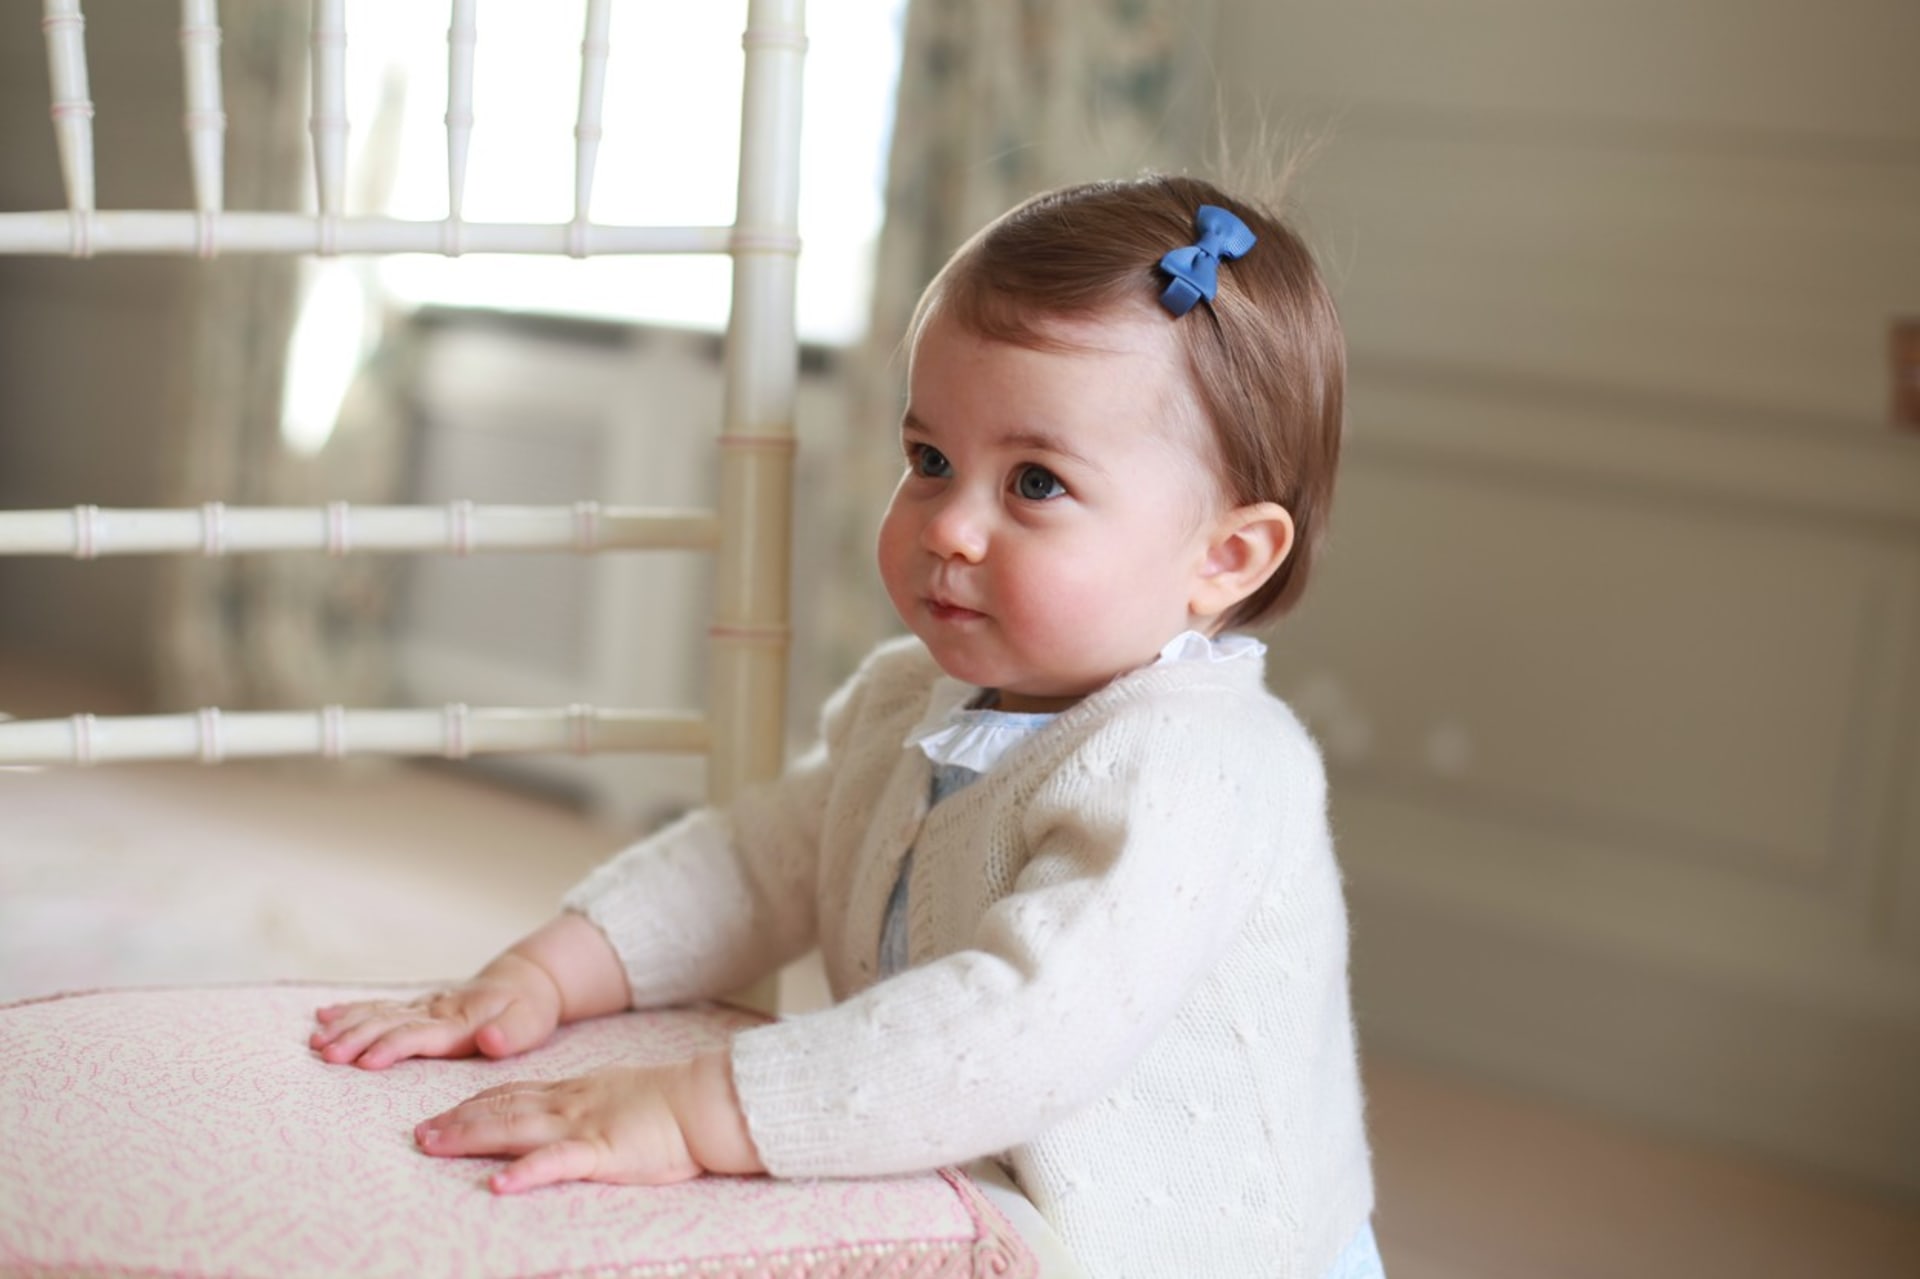 Roční Charlotte. Vévodkyně Kate fotí děti sama, u příležitosti narozenin vždy zveřejní jednu nebo dvě fotky.